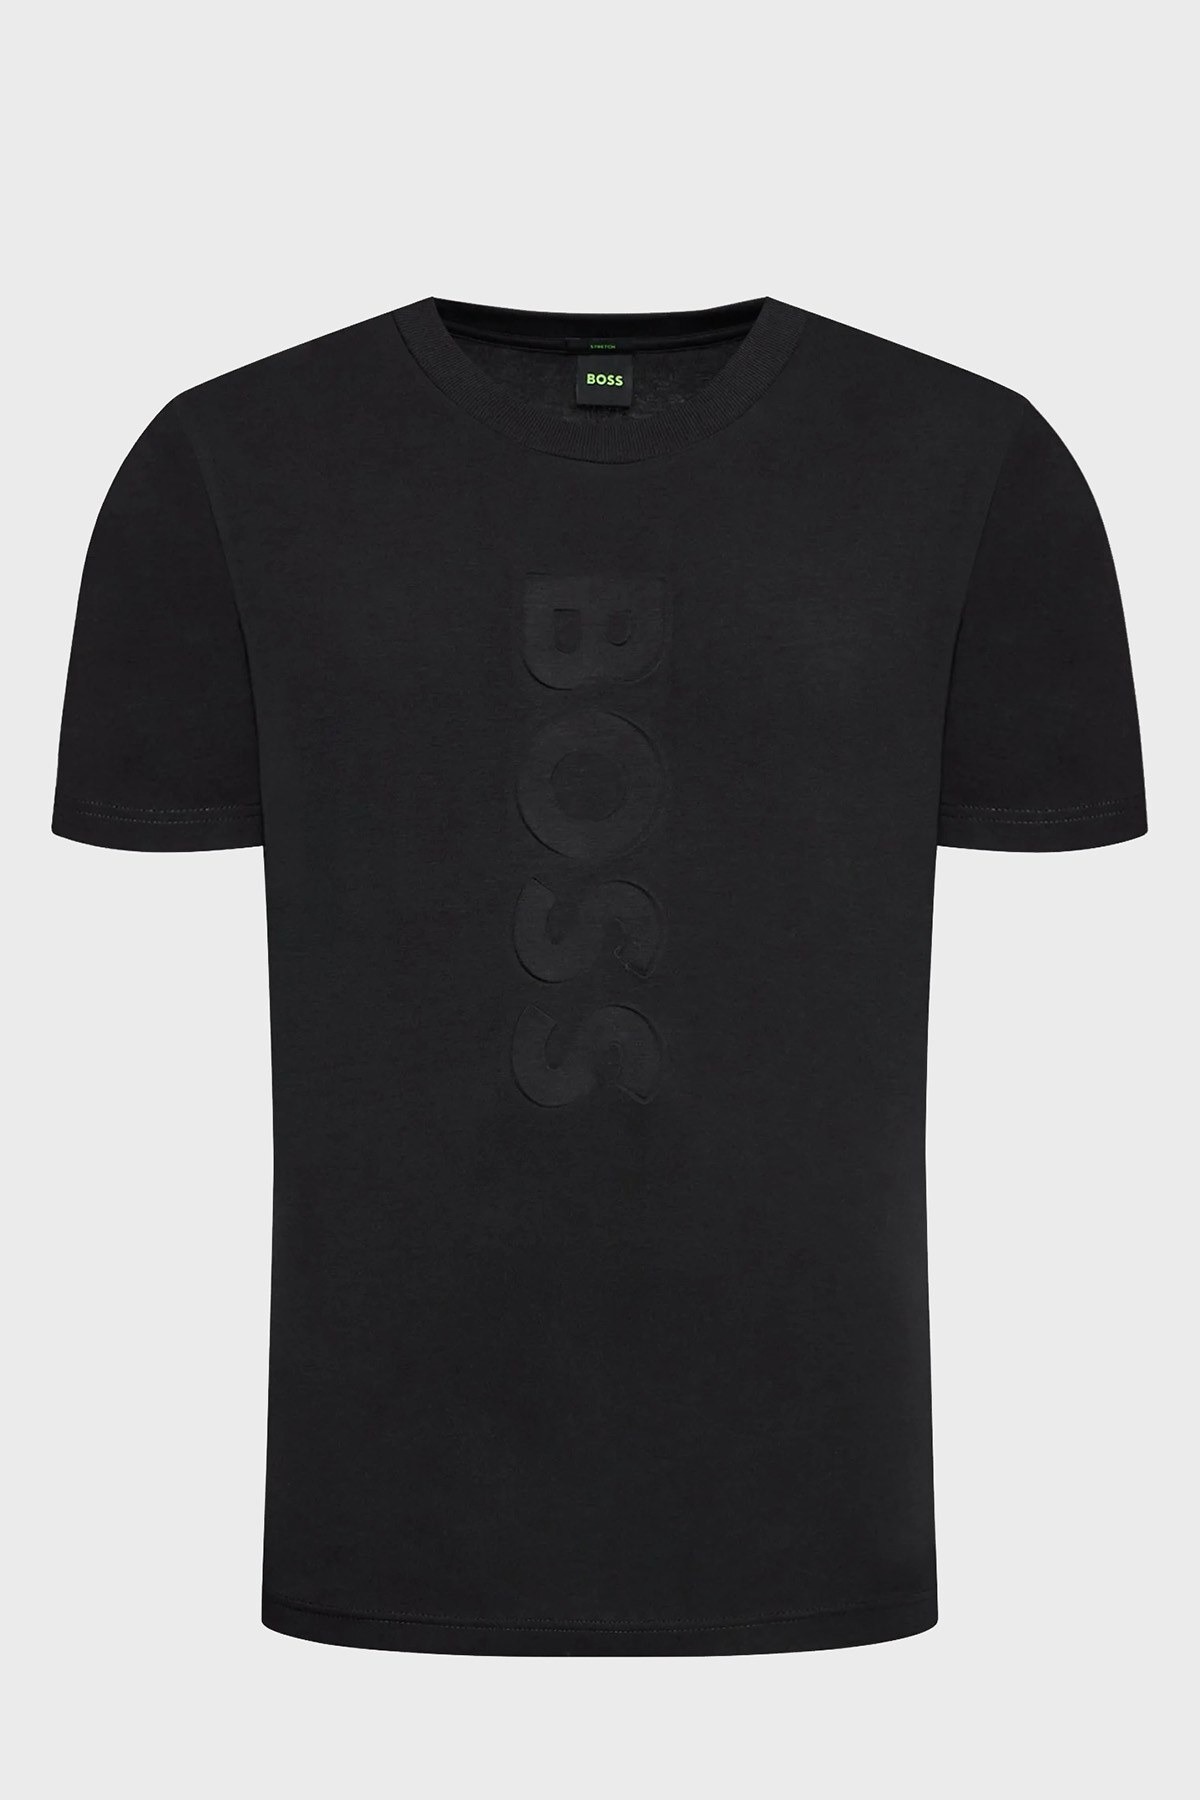 Boss Logolu Regular Fit Bisiklet Yaka Pamuklu Erkek T Shirt 50472863 001 SİYAH